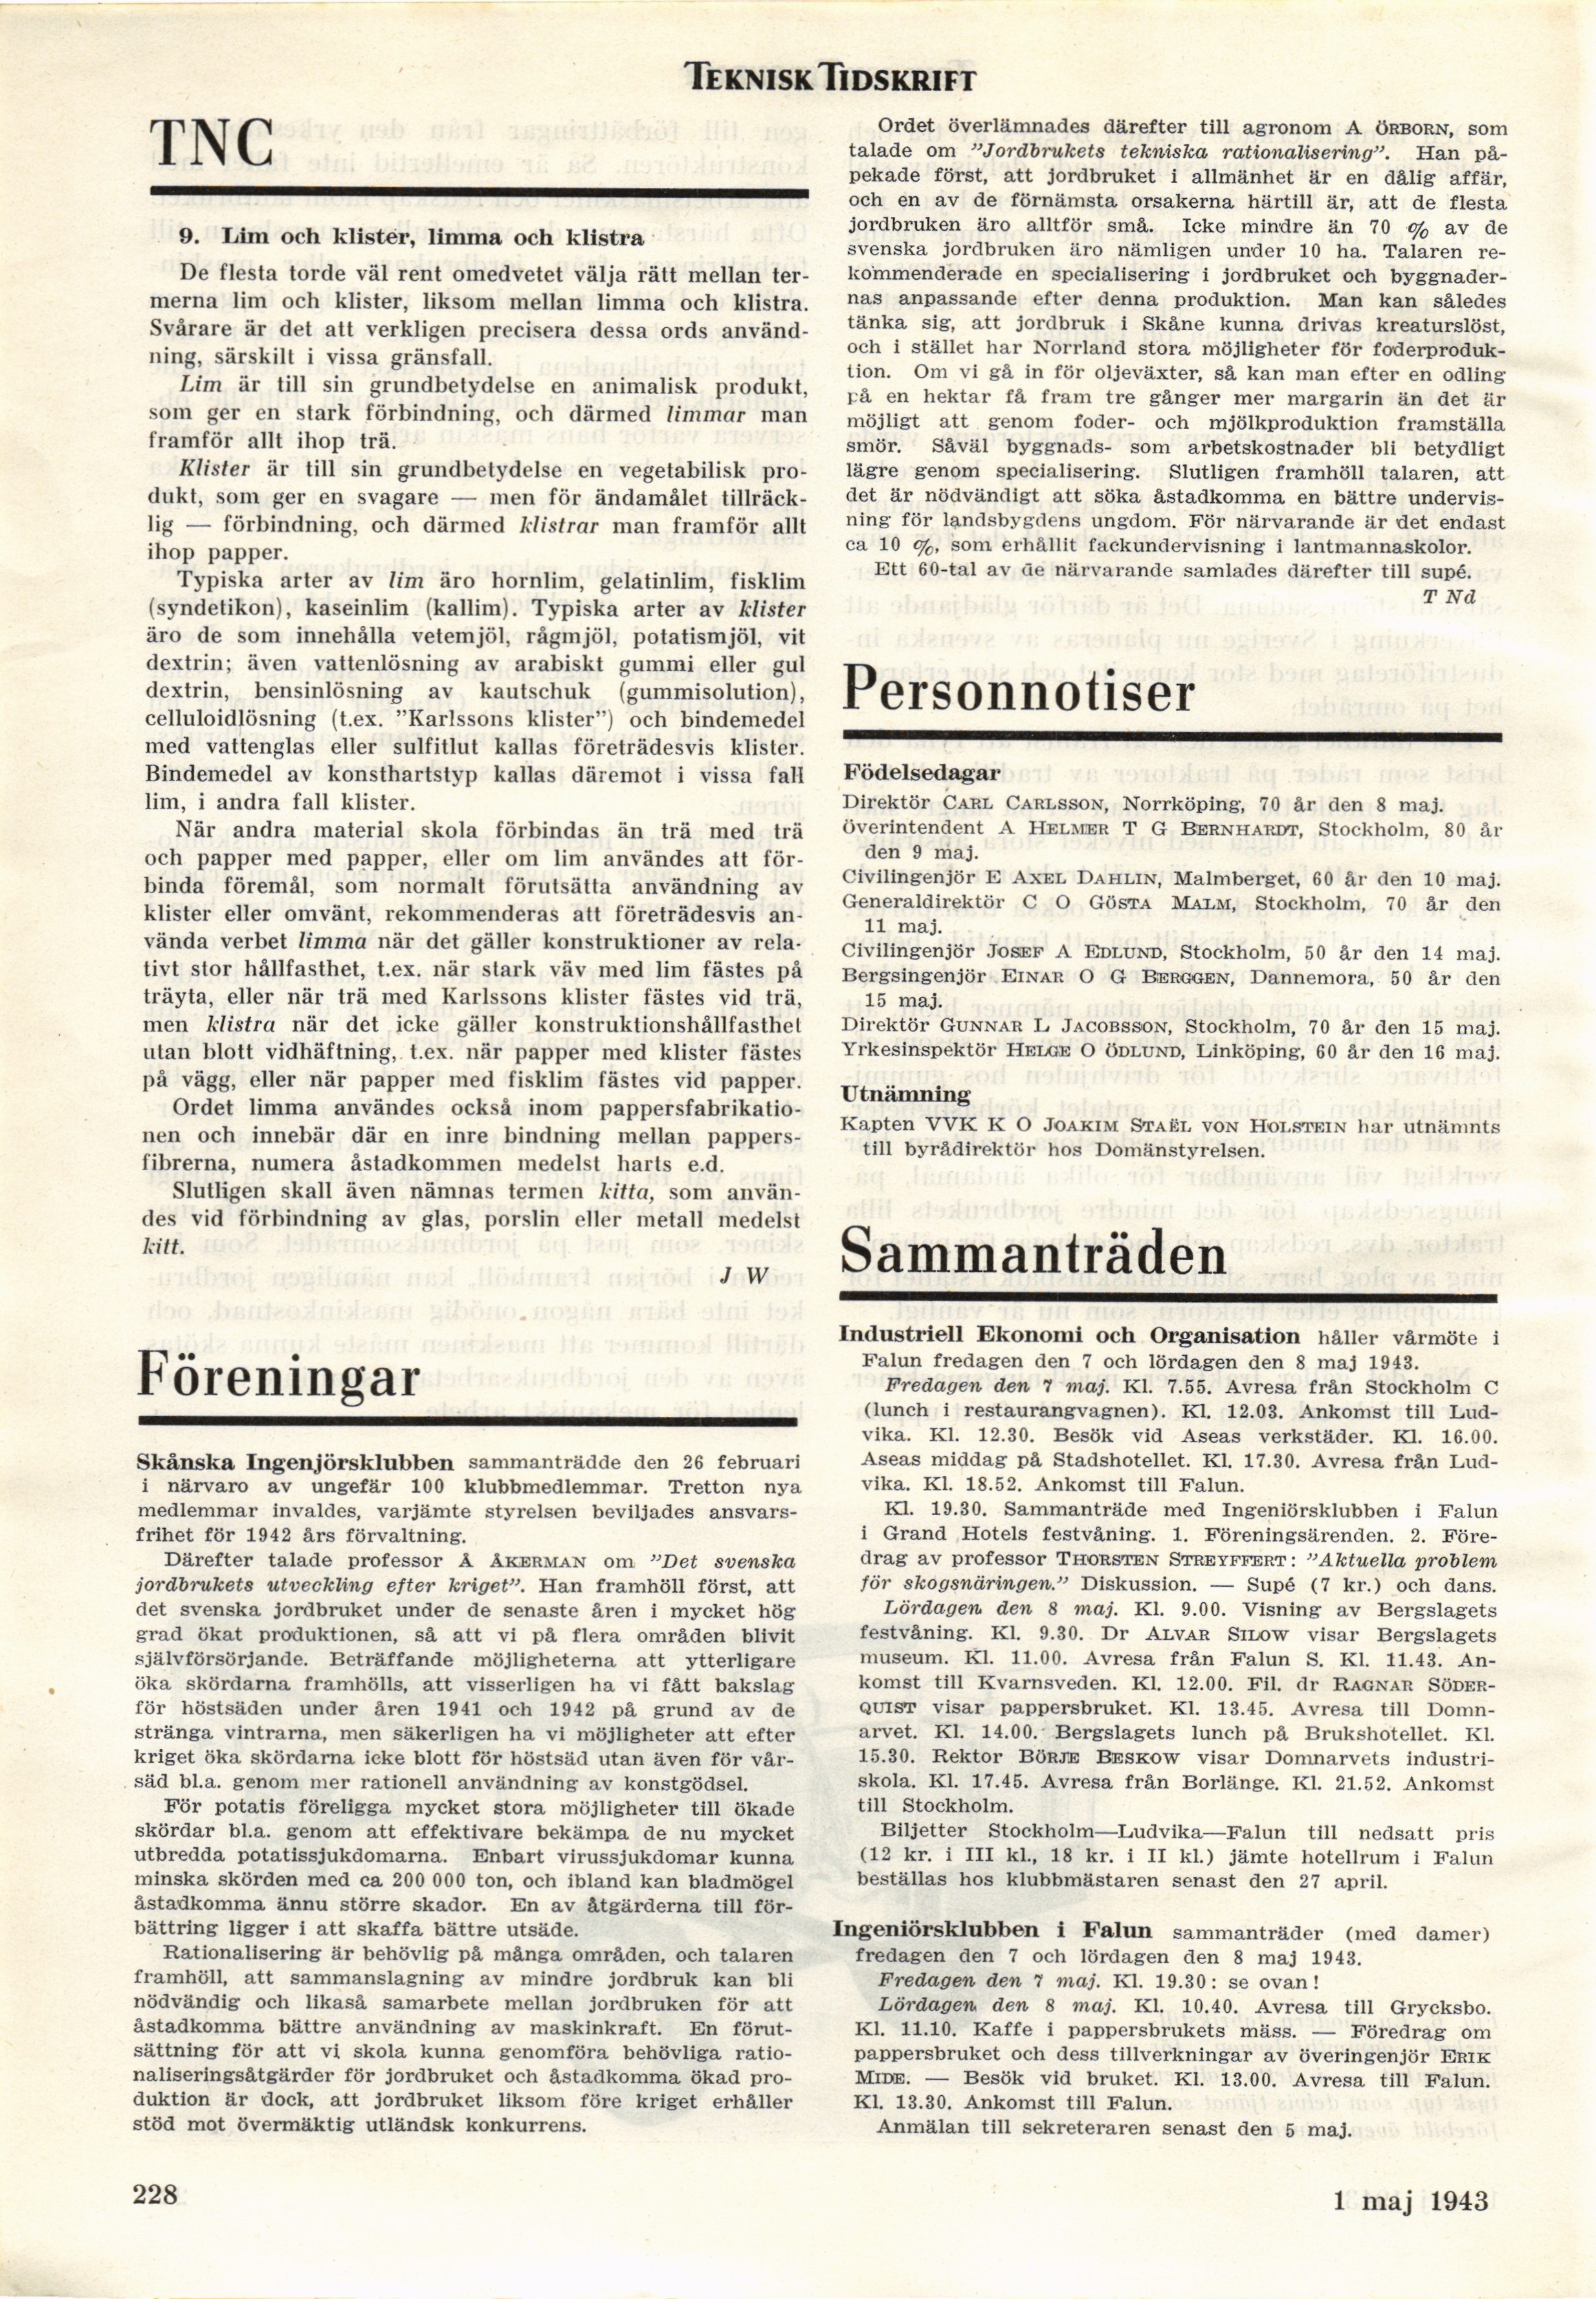 228 (Teknisk Tidskrift / 1943. Allmänna avdelningen)